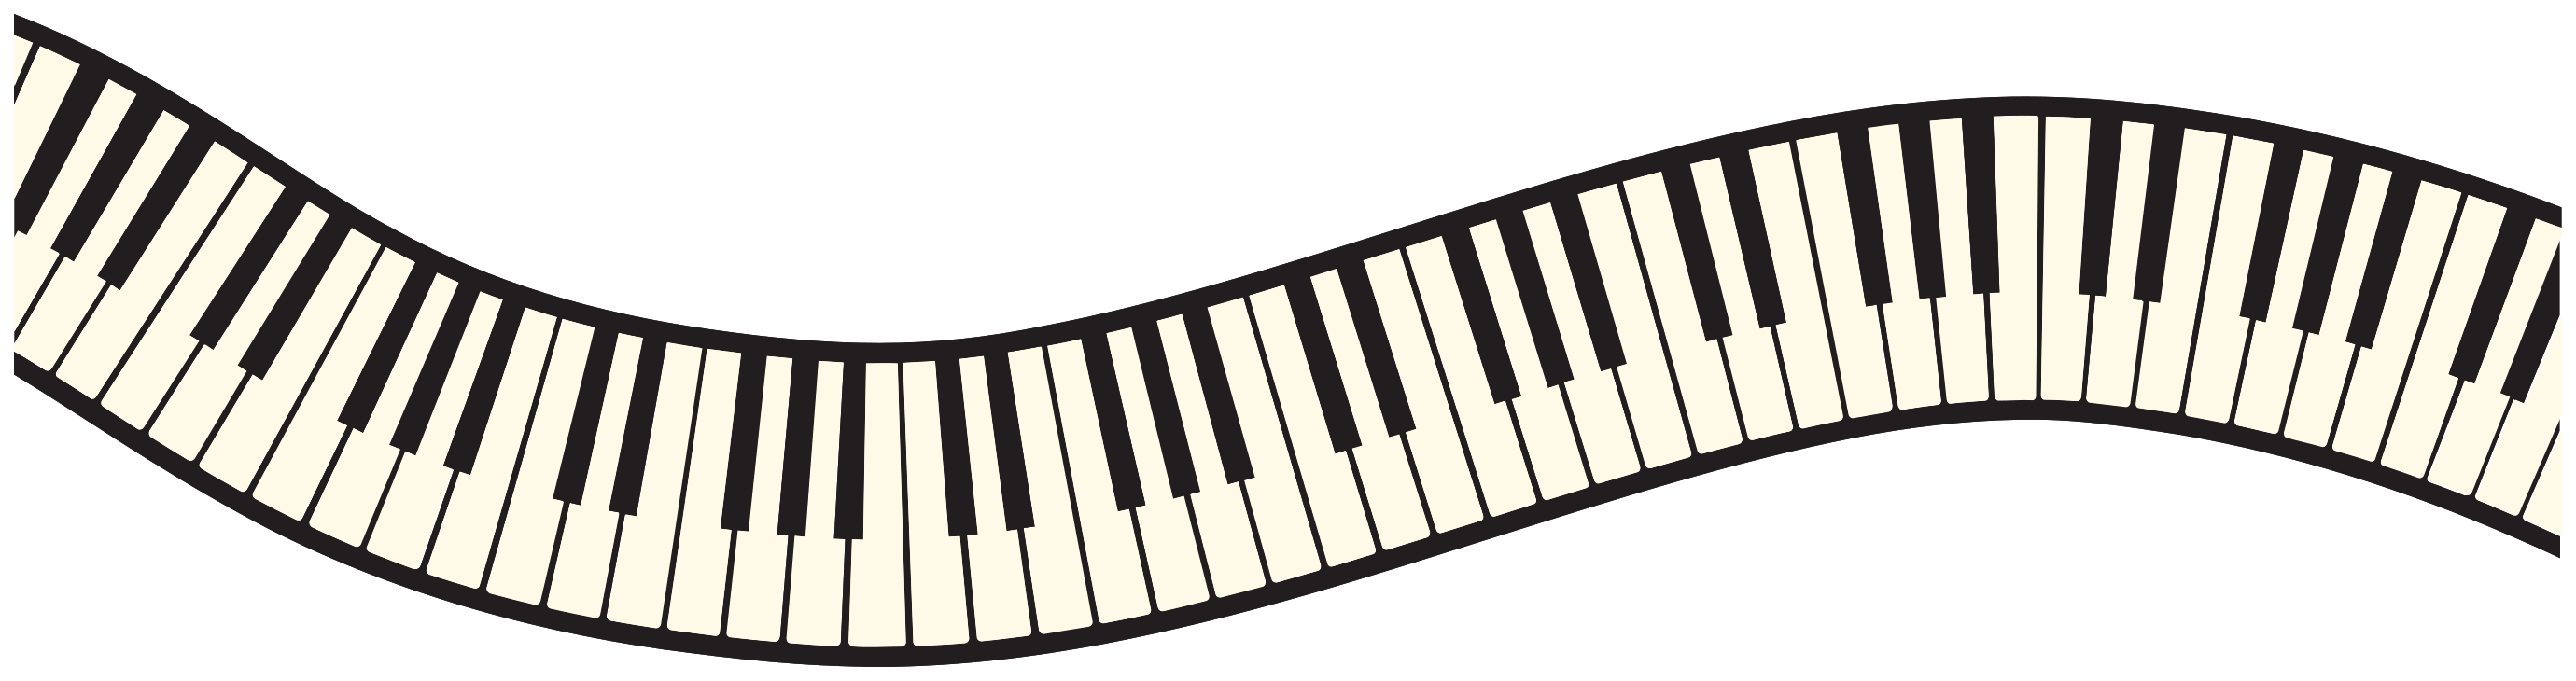 Vektor piano PNG hd